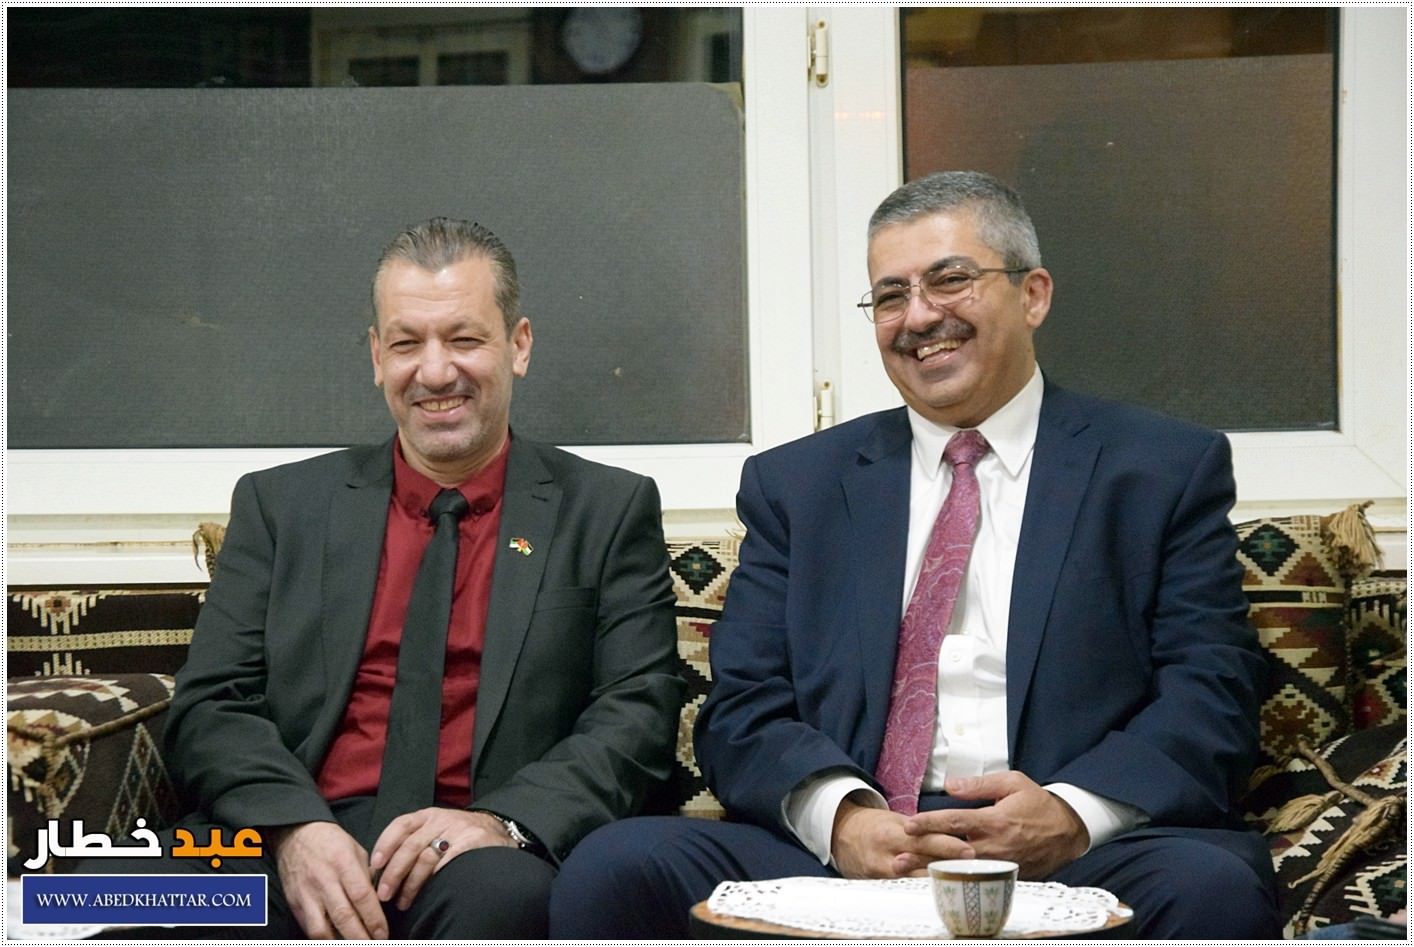 الجالية الأردنية تستضيف سعادة السفير الدكتور بشير الزعبي سفير المملكه في المانيا وضيوف من البرلمان الاردني